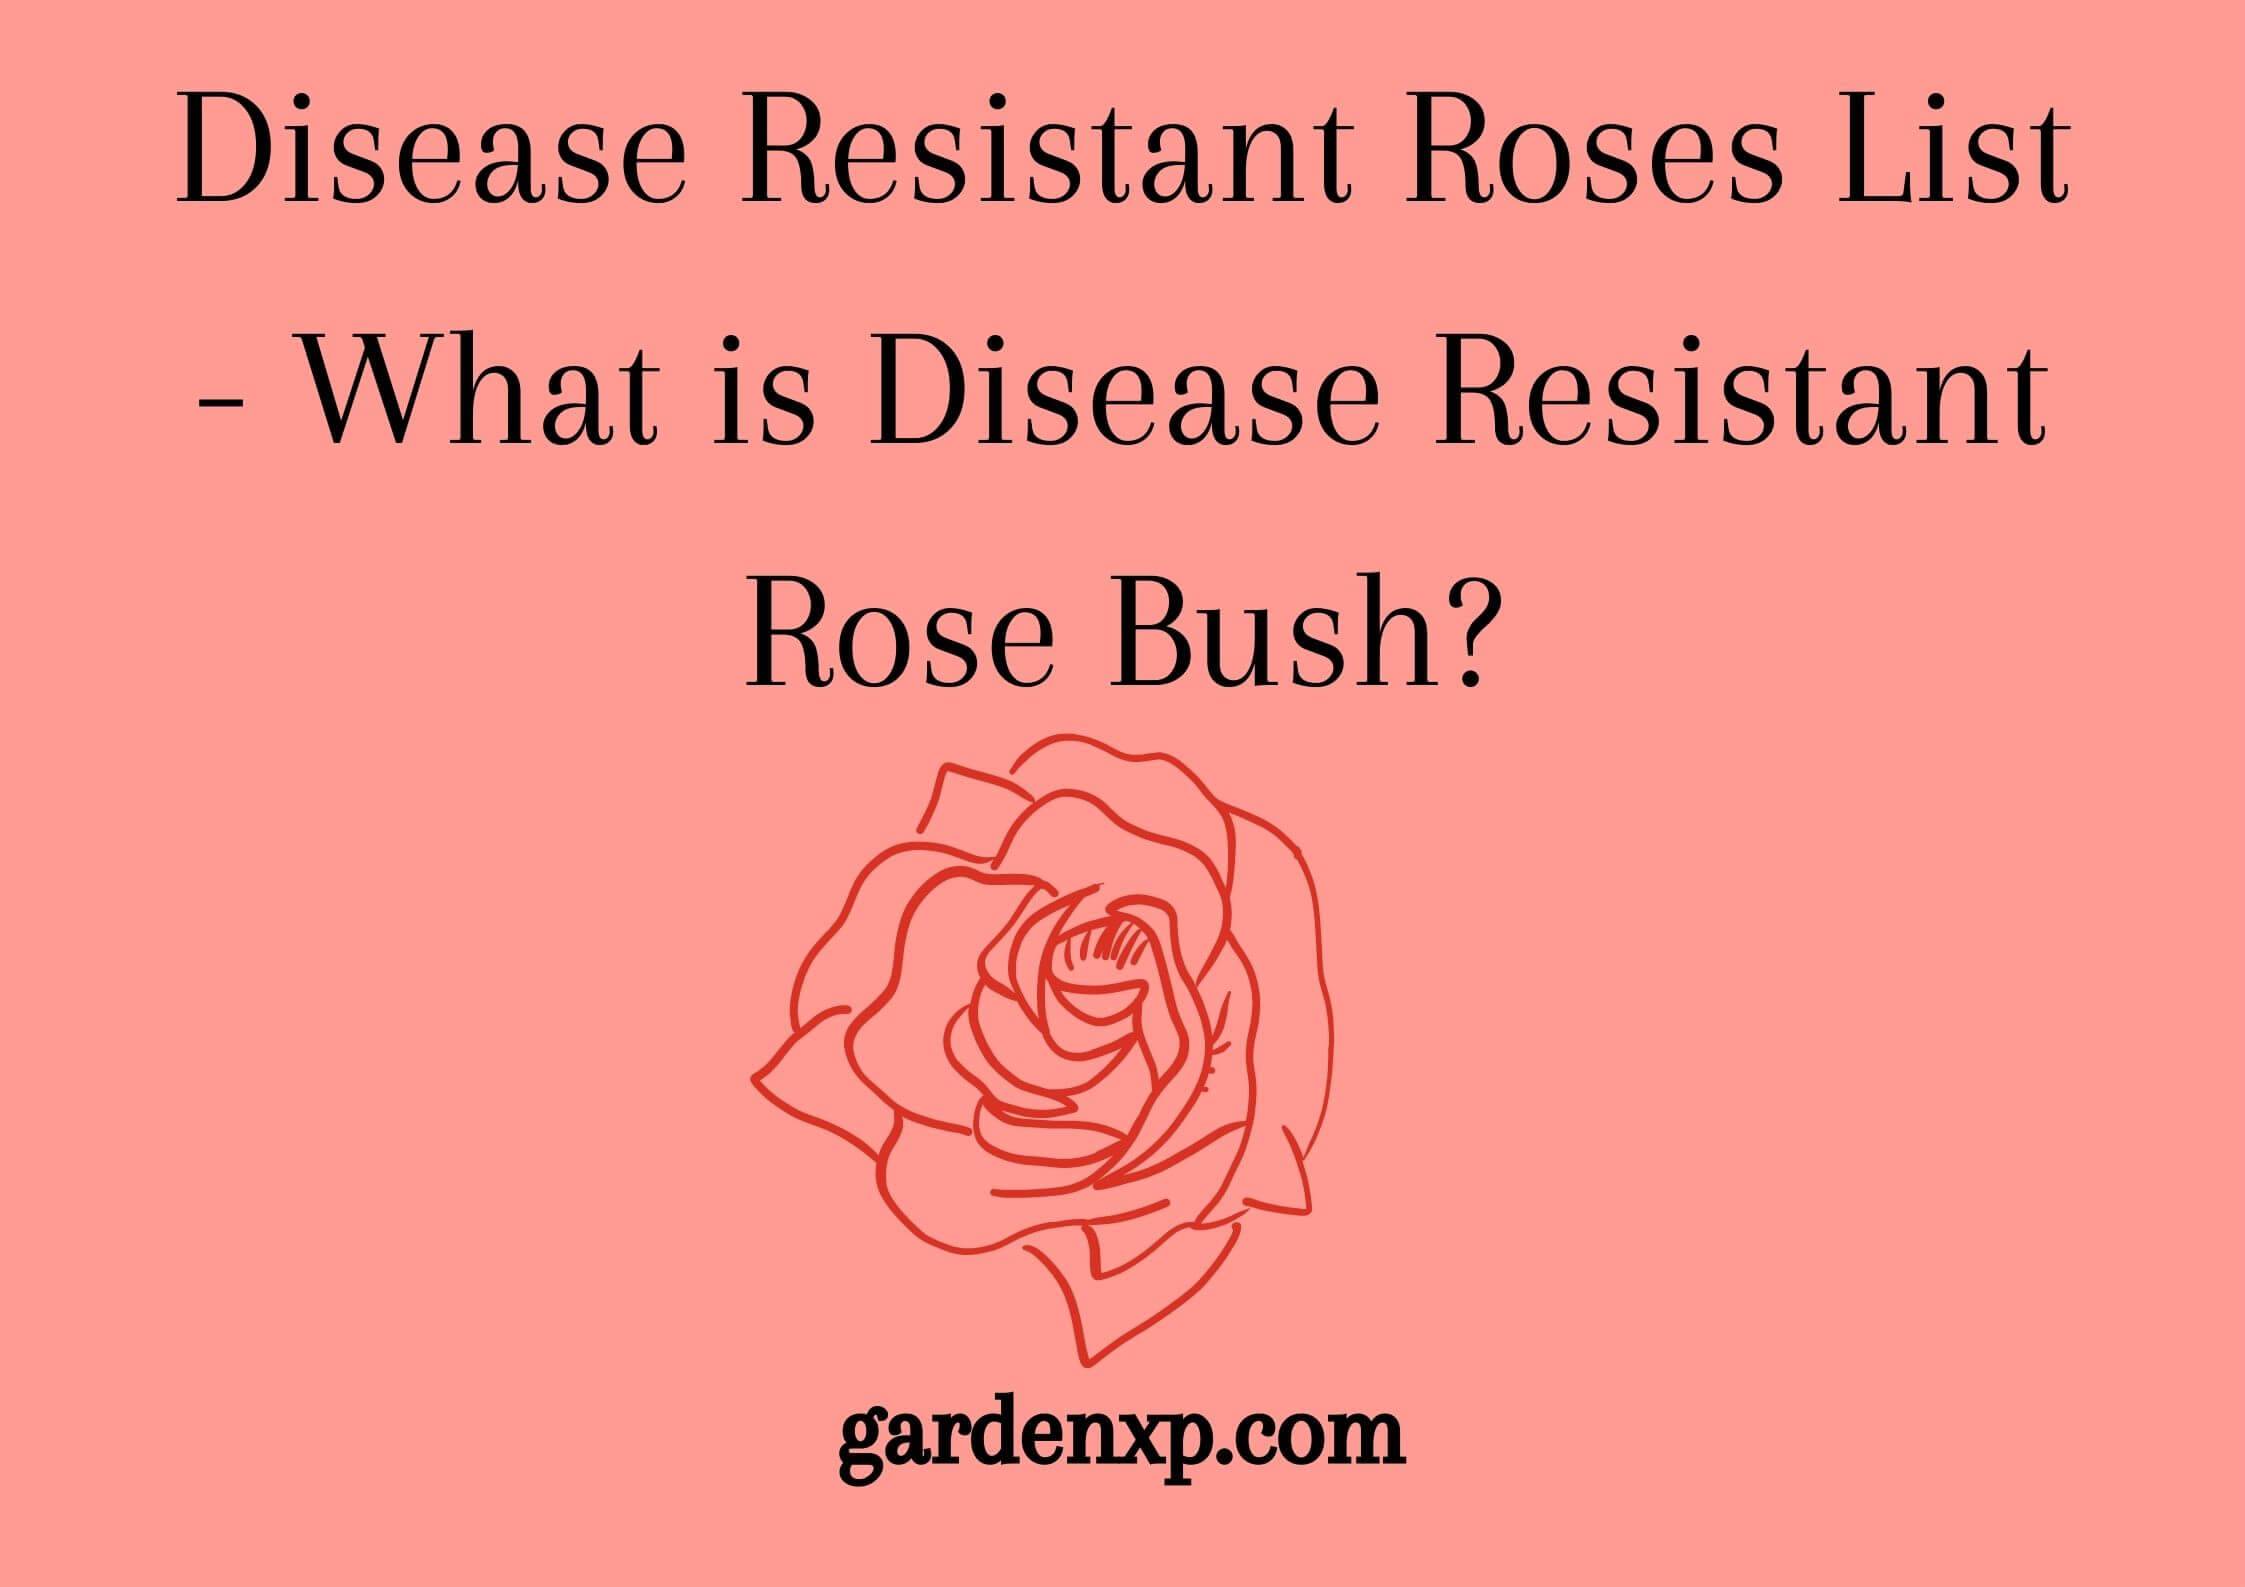 Disease Resistant Roses List - What is Disease Resistant Rose Bush?